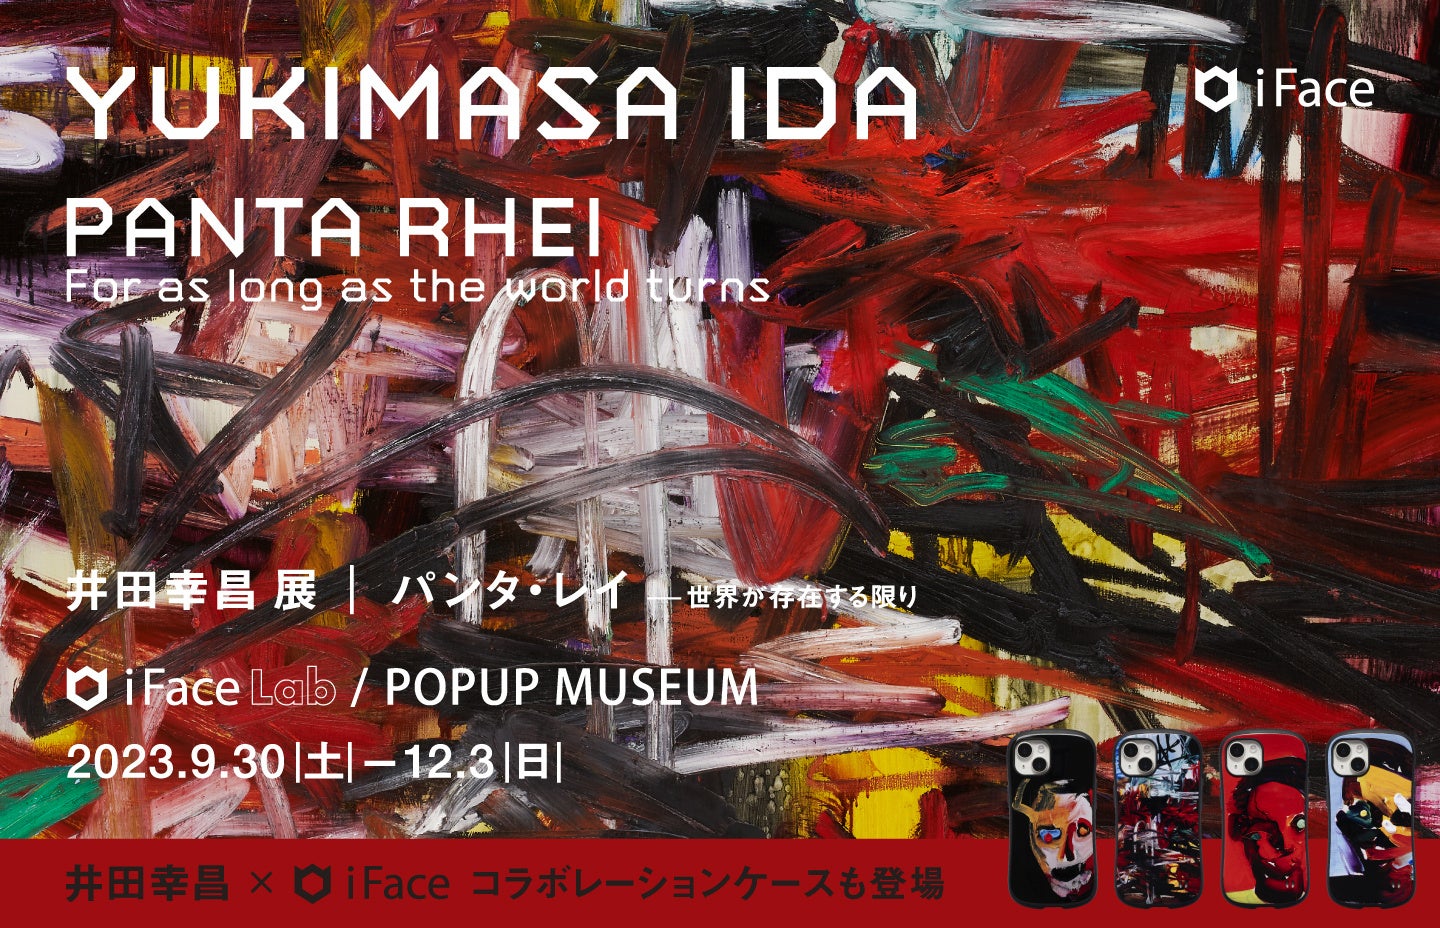 世界が注目する画家・現代美術家の井田幸昌氏「YUKIMASA IDA PANTA RHEI iFace Lab POPUP MUSEUM 」を開催　作品とコラボしたスマホケースなどの限定製品も販売